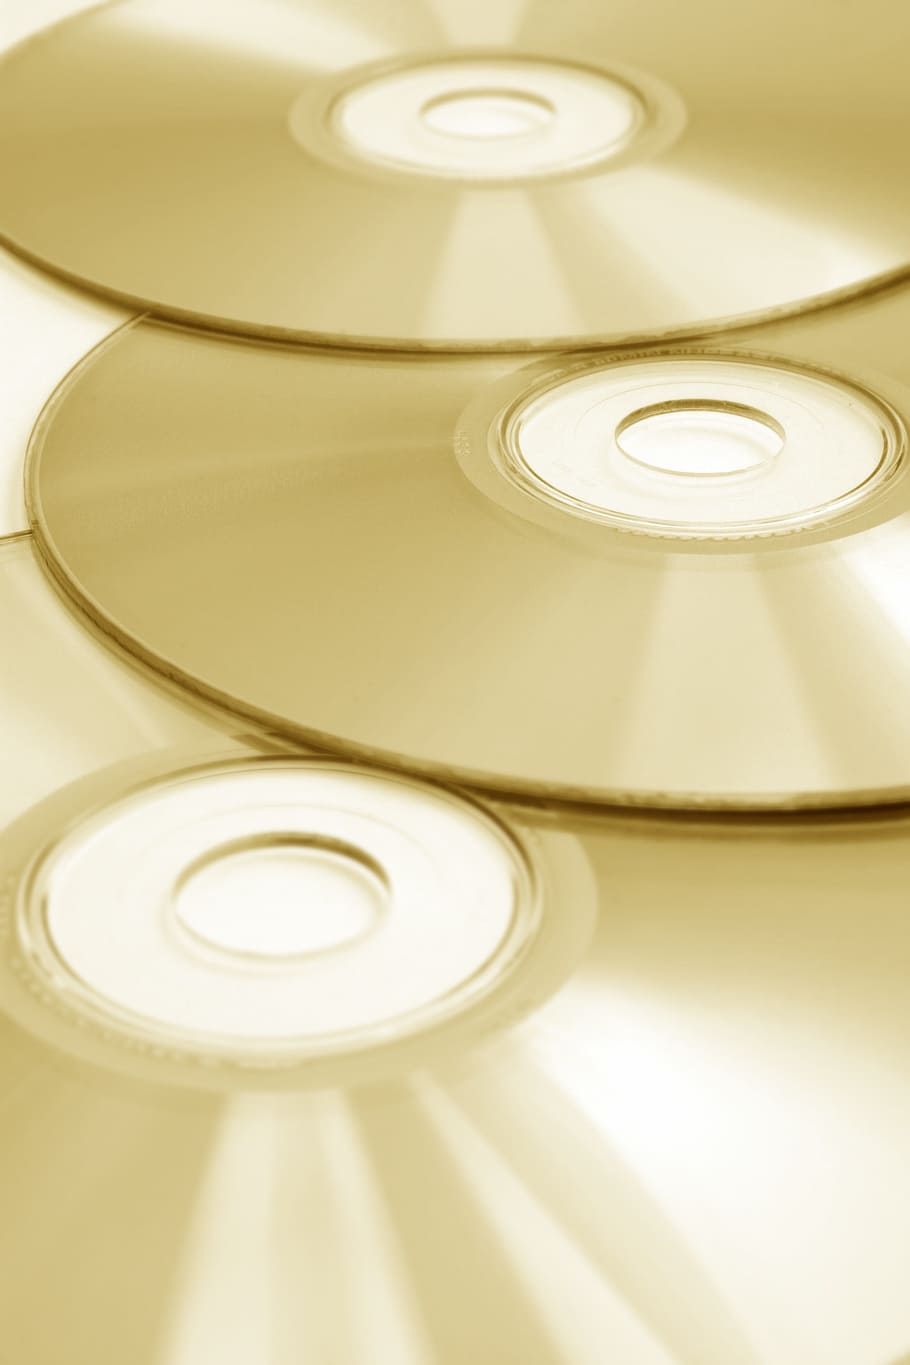 クローズアップ写真, ディスク, CD, コンパクトディスク, データ, 音楽, テクノロジー, オーディオ, DVD, コンピューター